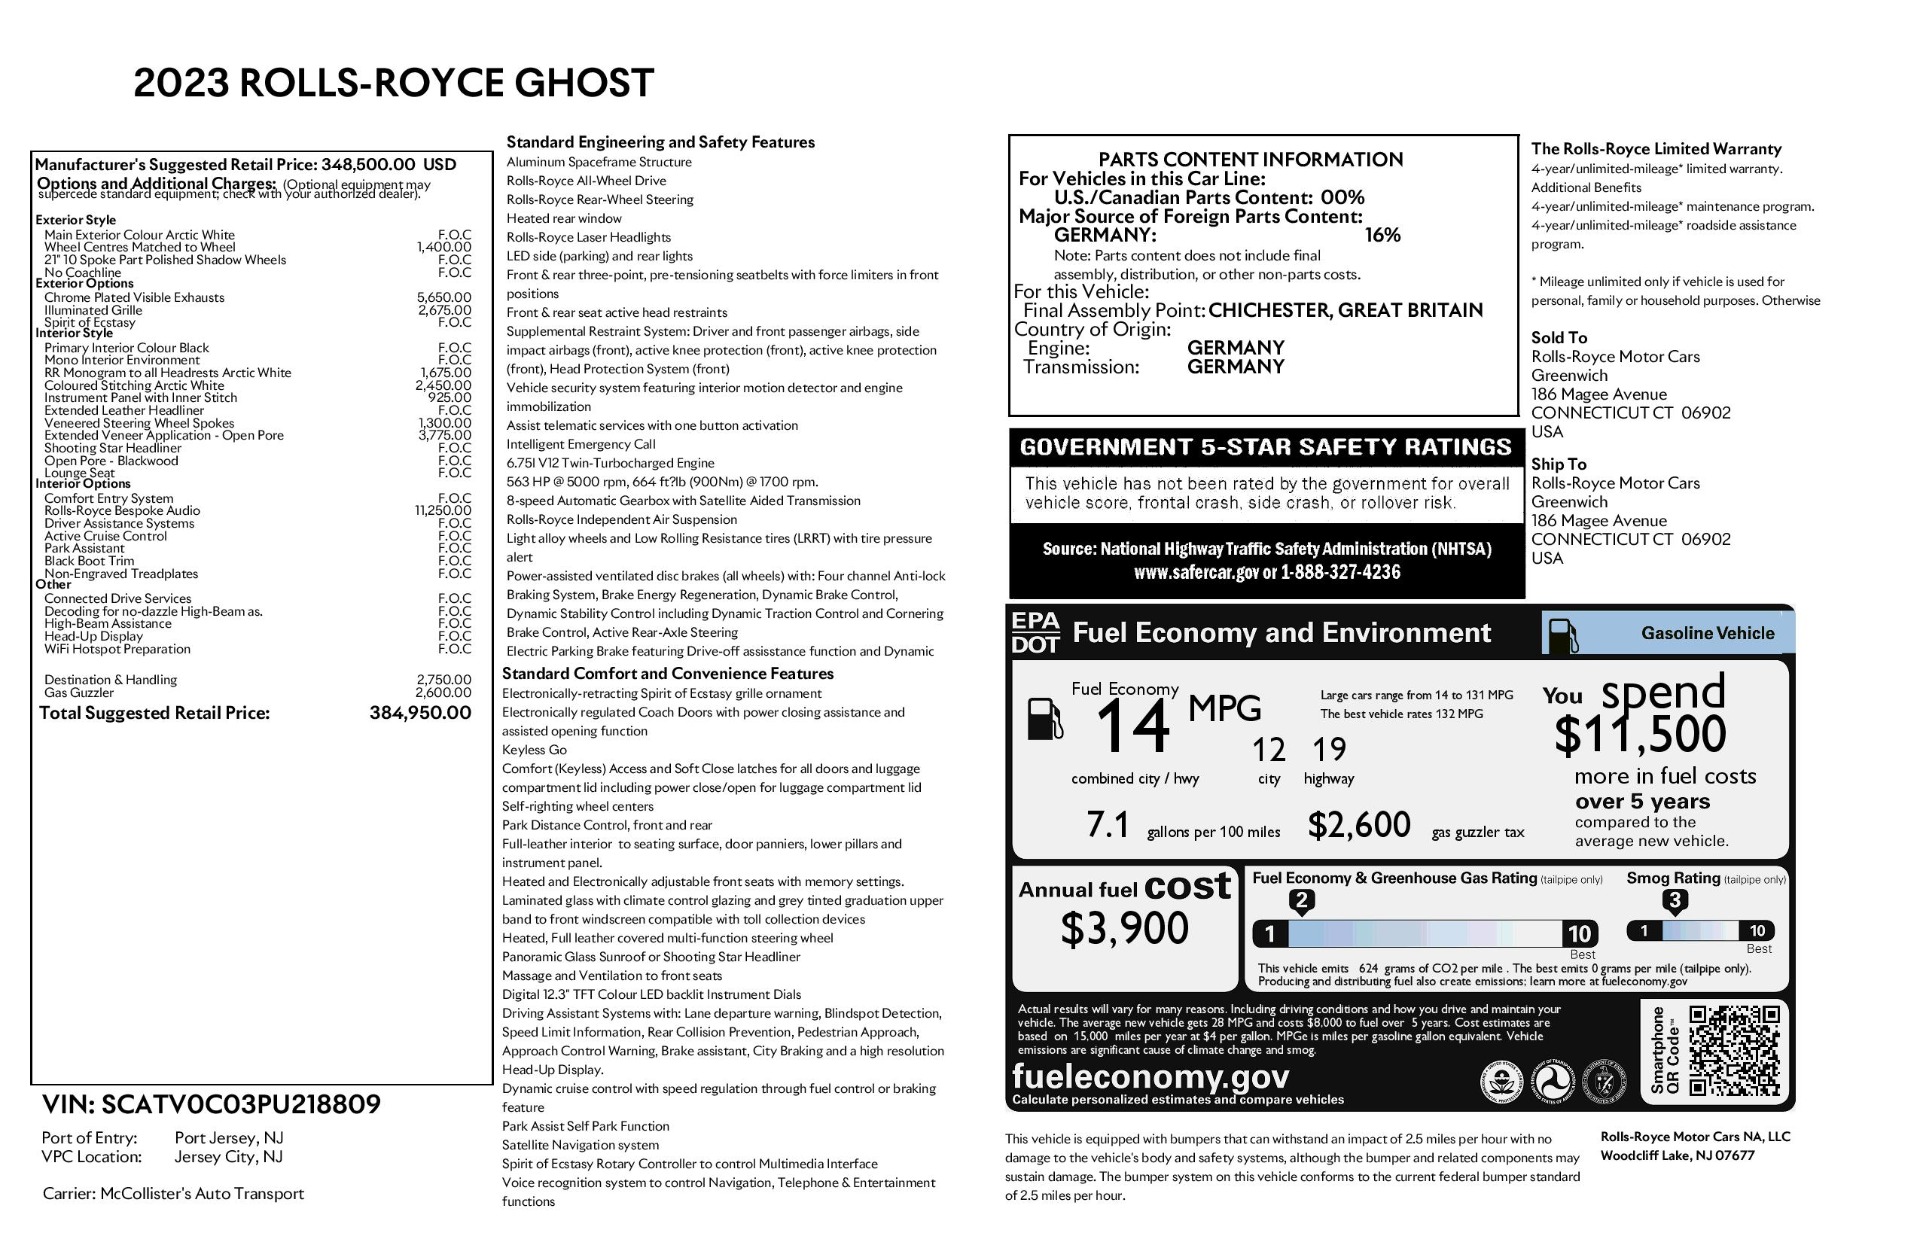 New 2023 RollsRoyce Ghost For Sale (384,950) RollsRoyce Motor Cars